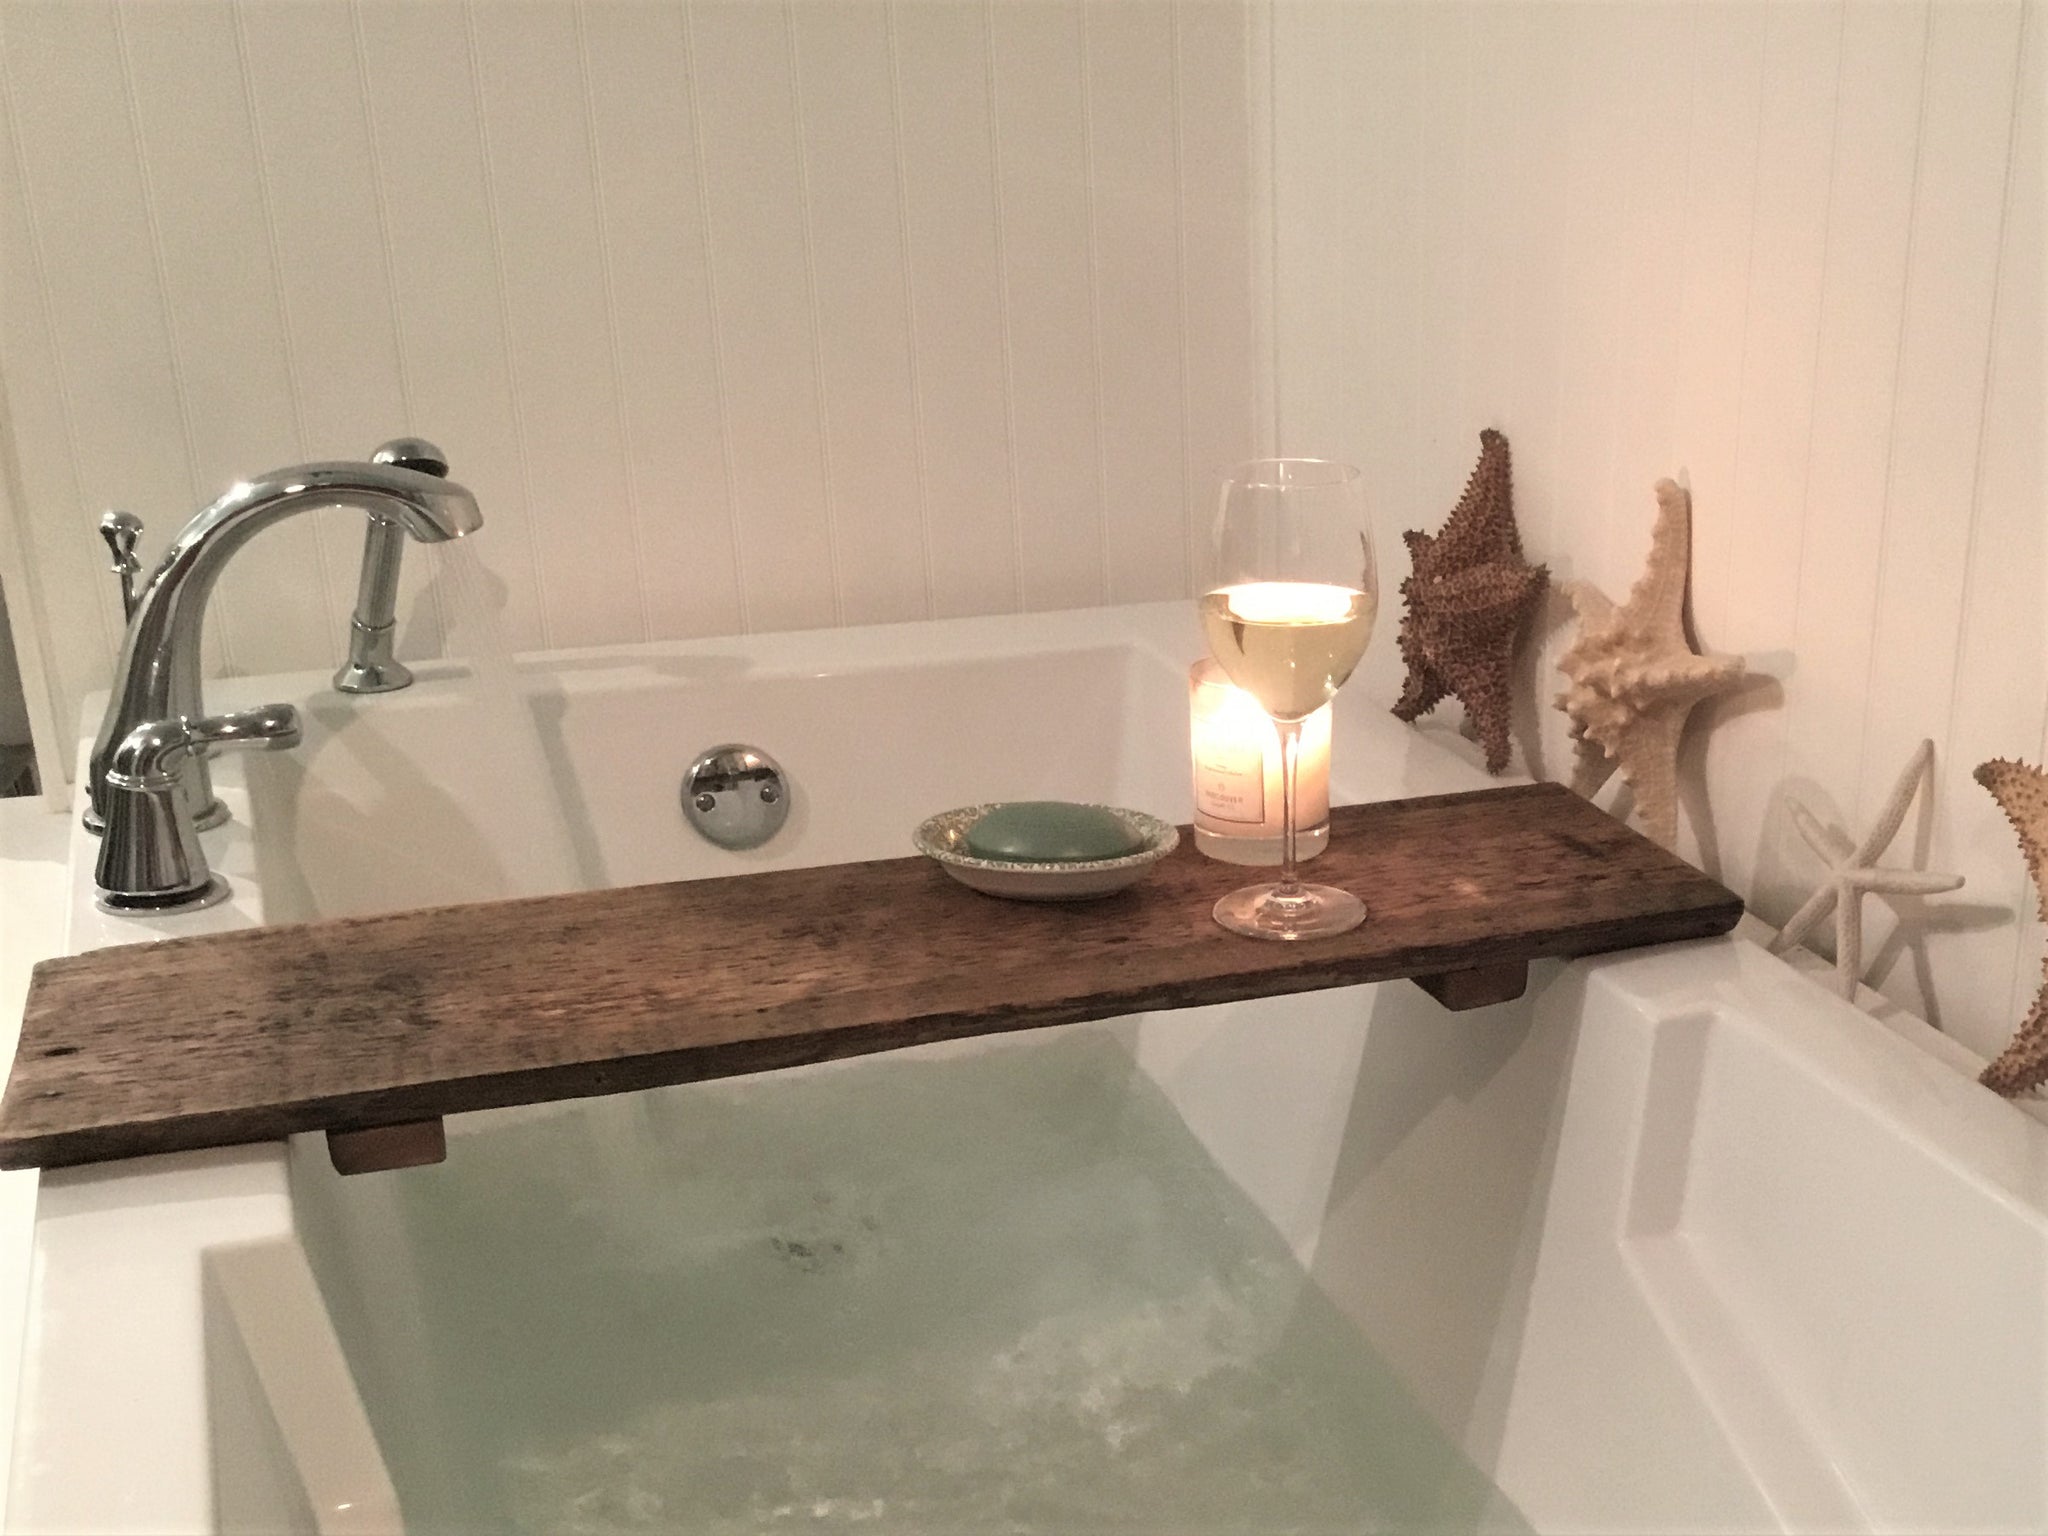 Rustic wood bath caddy, bathtub tray